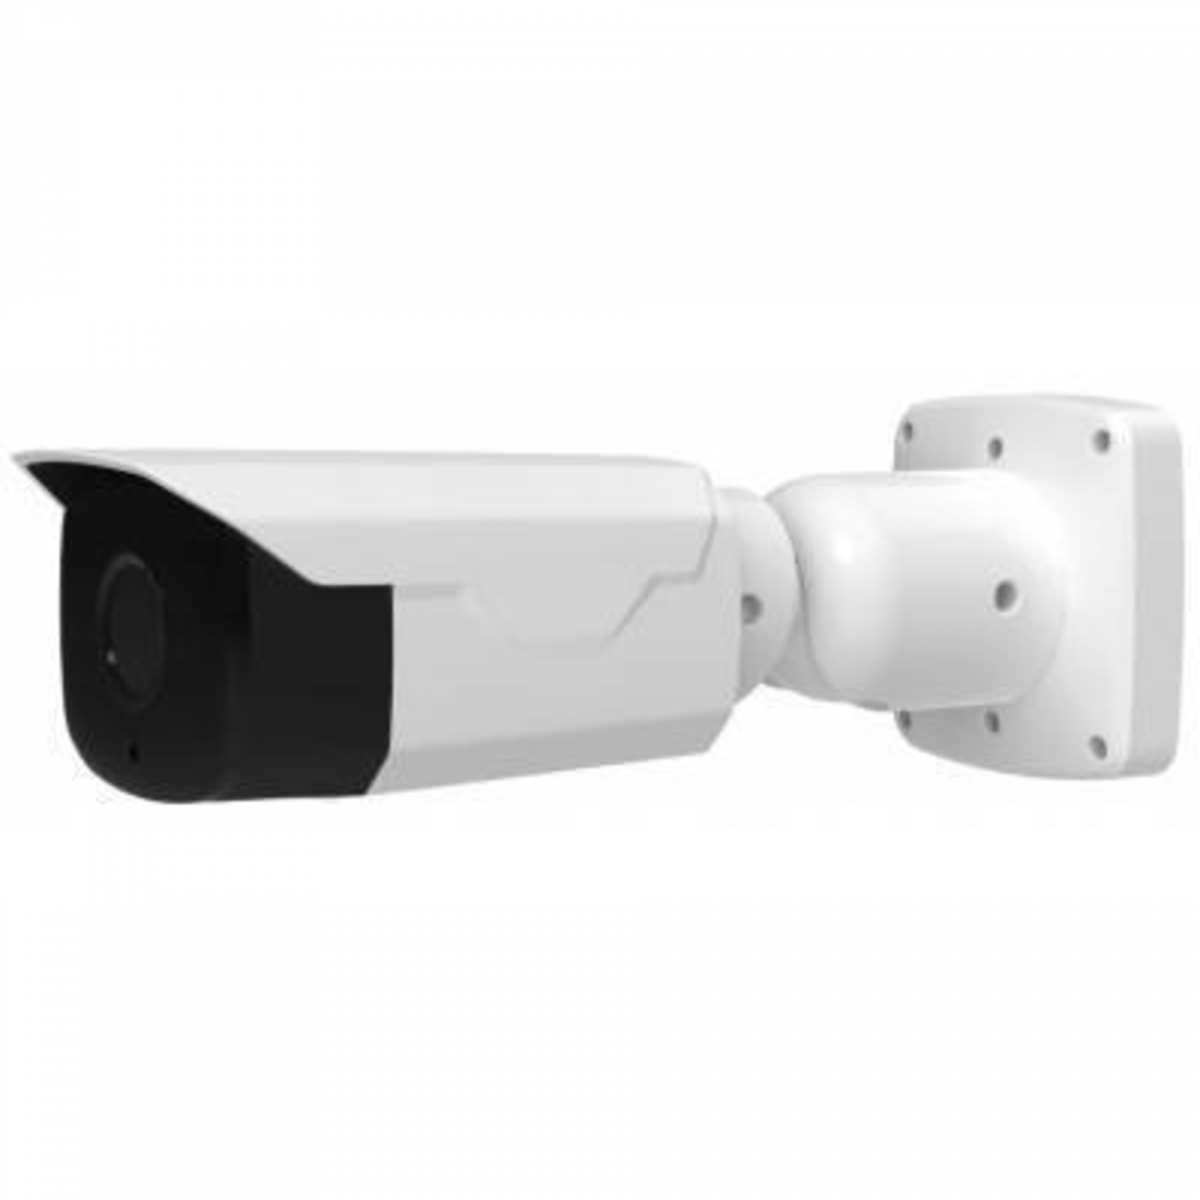 IP камера буллет 2мп OMNY BASE ViBe2Z550LPR-WDS v2 с функционалом распознования автомобильных номеров и управлением шлагбаумом/воротами